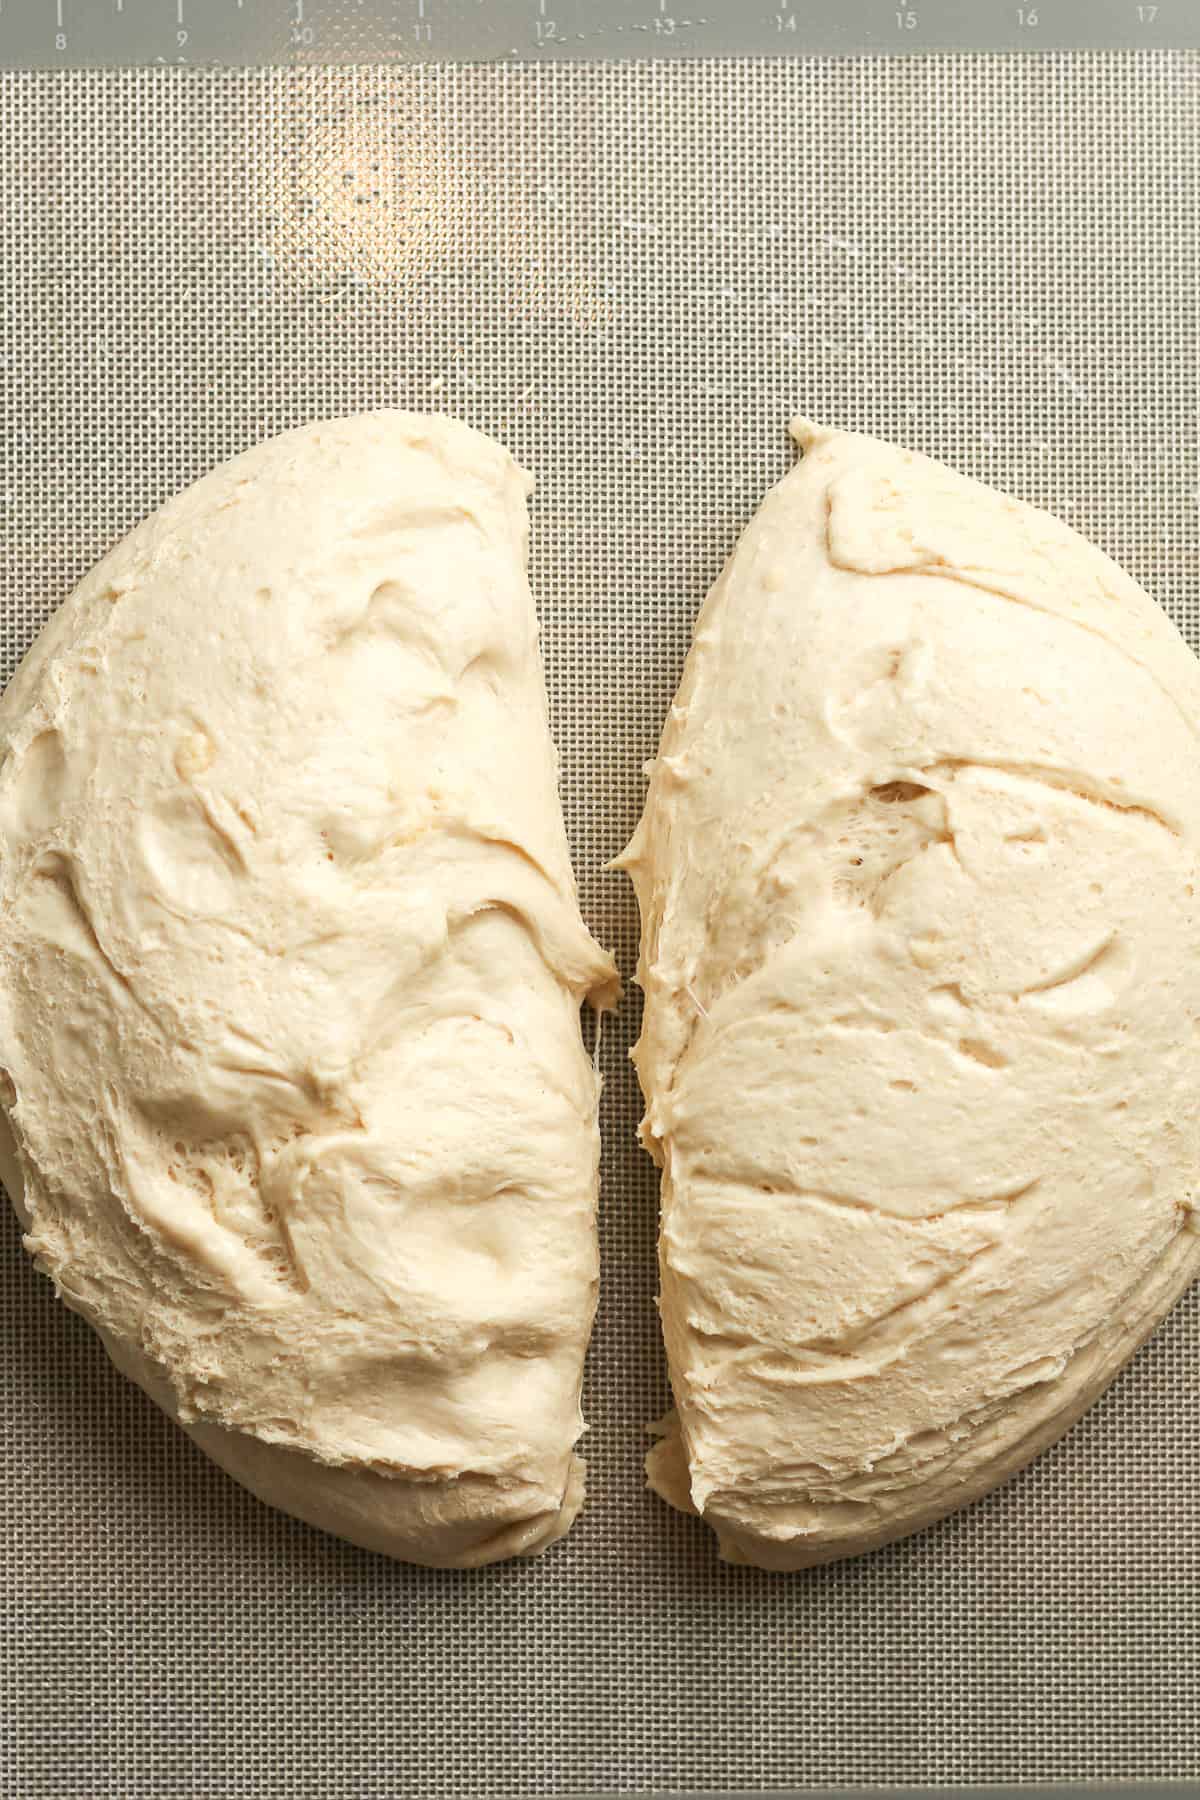 The dough, cut in half.